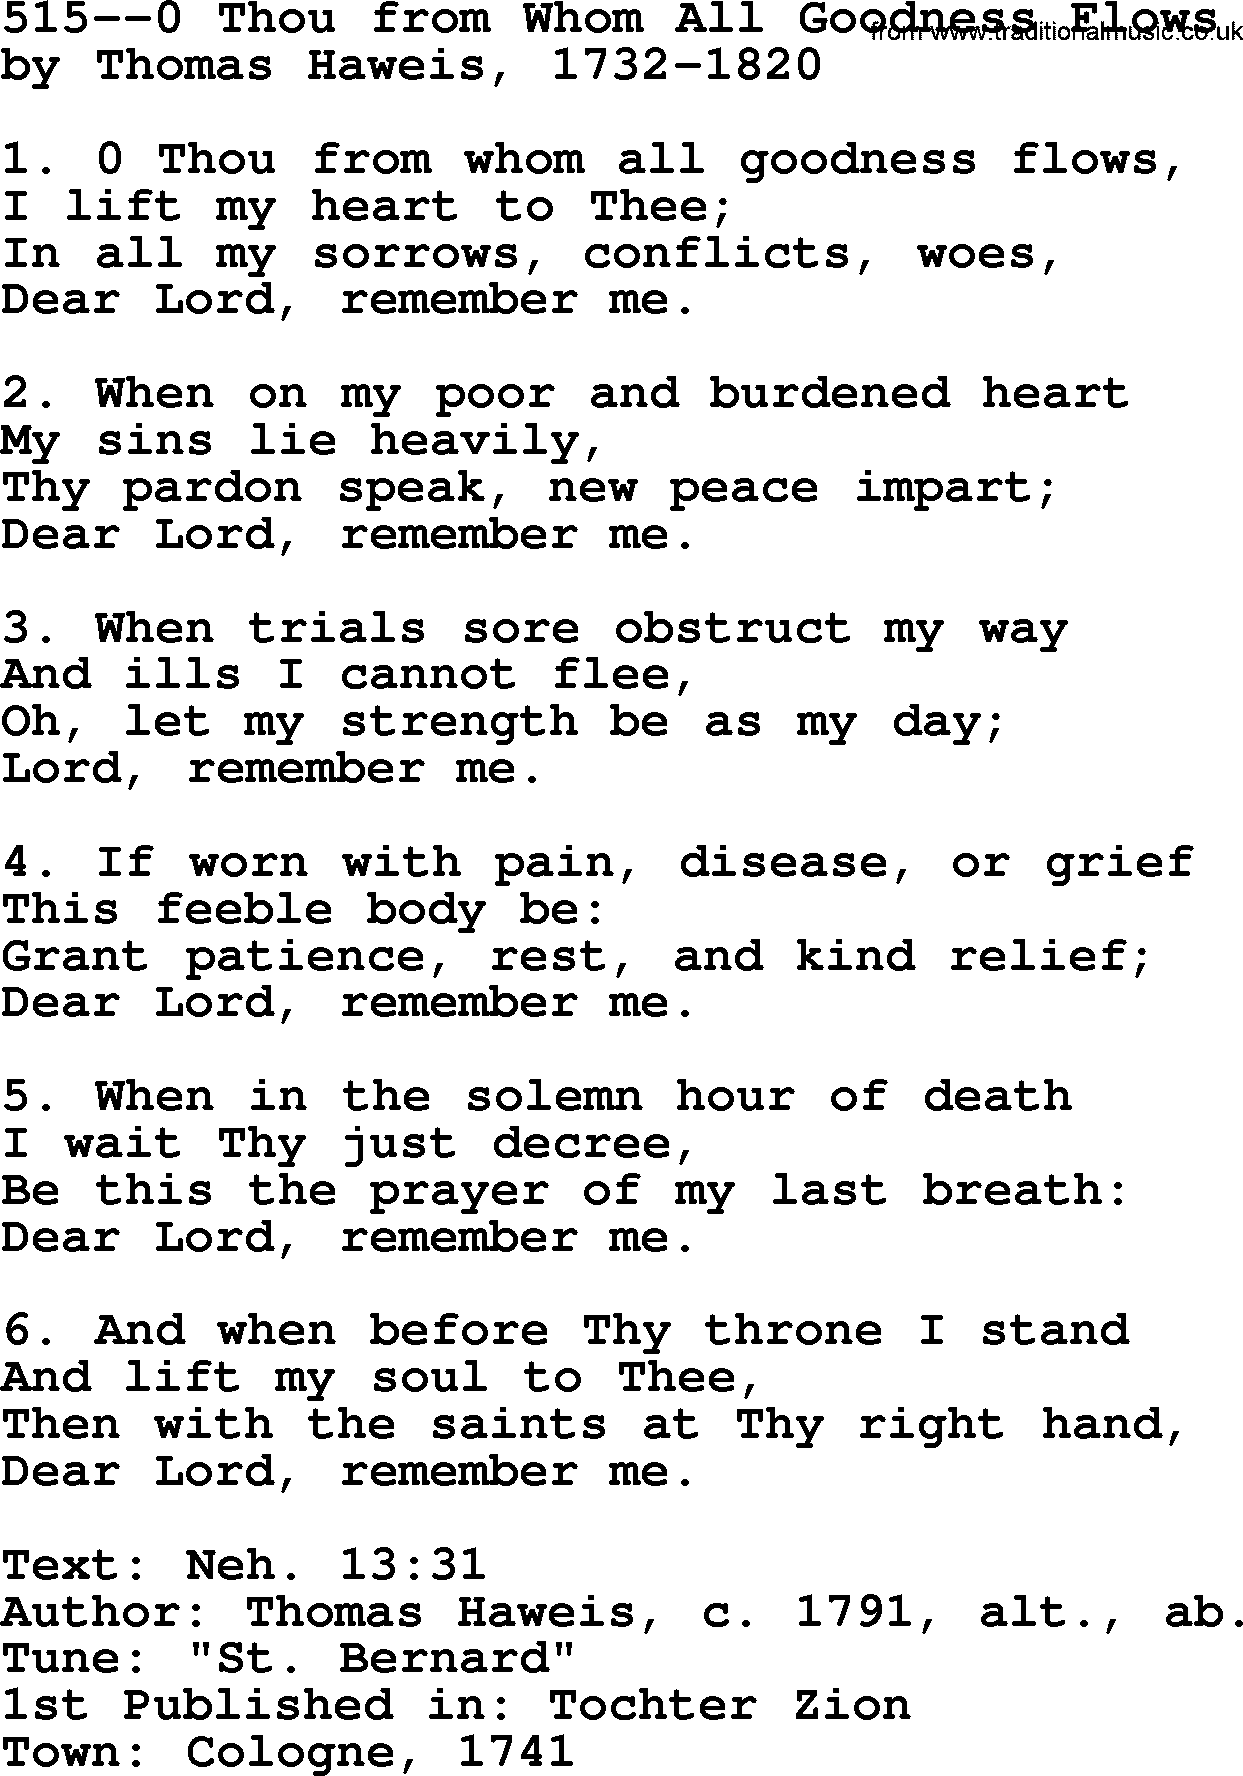 Lutheran Hymn: 515--0 Thou from Whom All Goodness Flows.txt lyrics with PDF